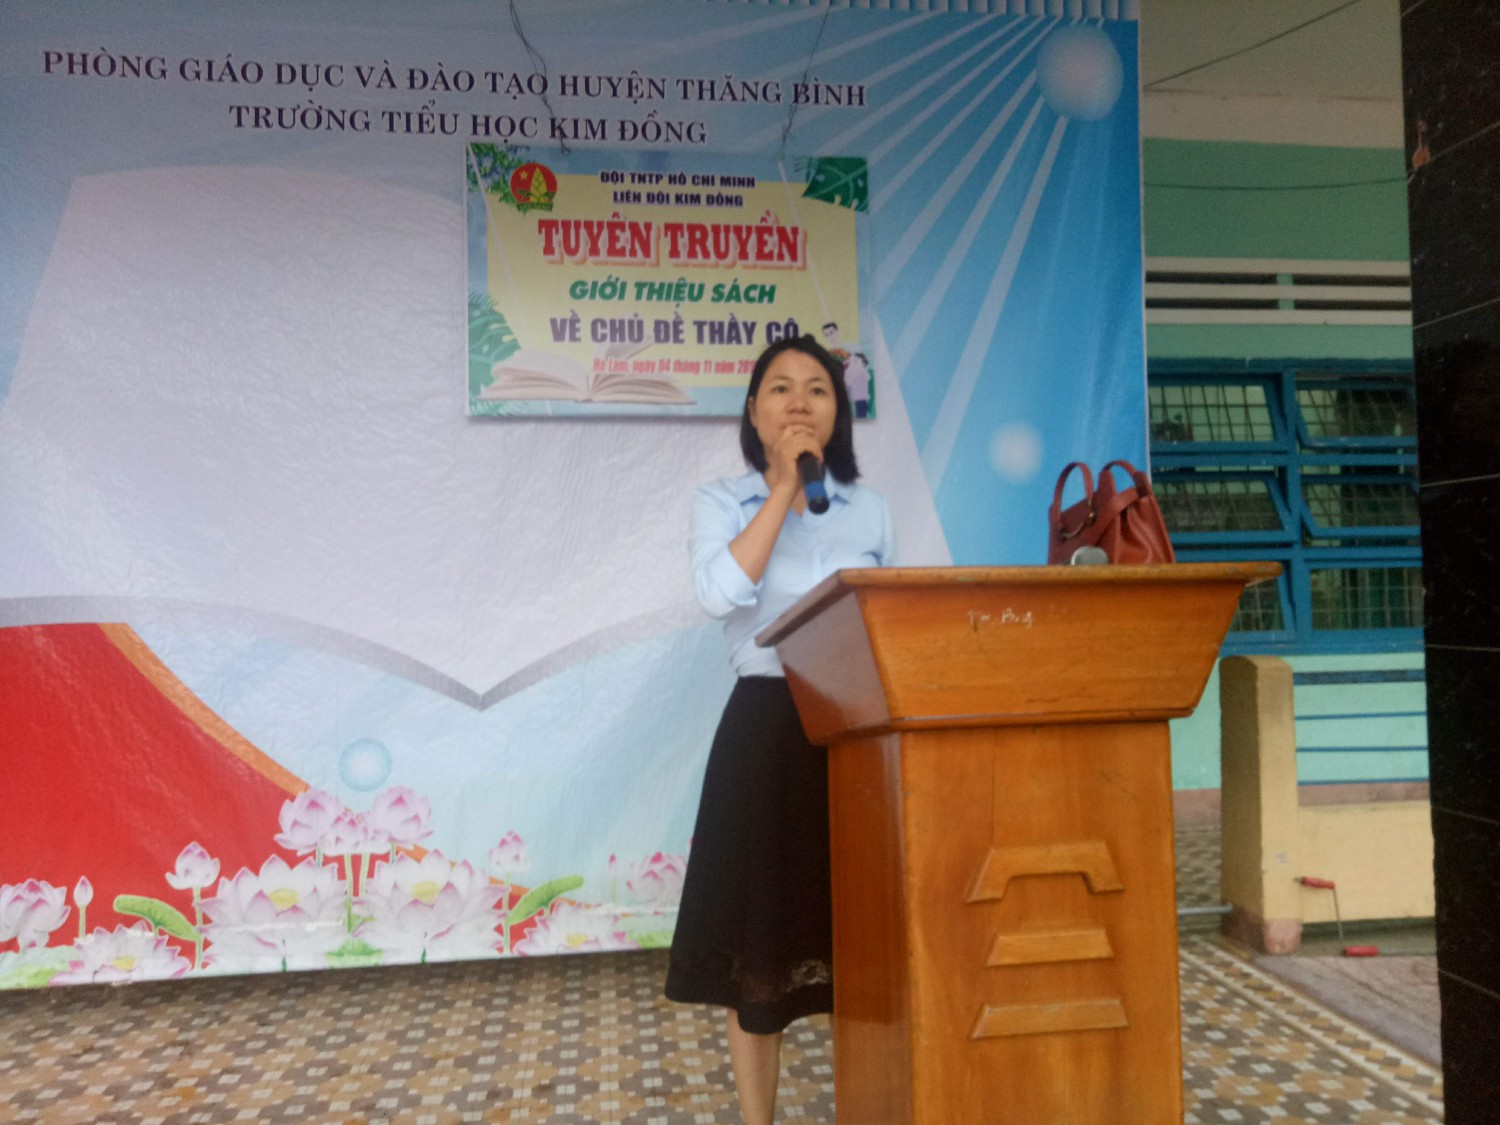 Kim Đồng tổ chức tuyên truyền giới thiệu sách về chủ đề thầy cô